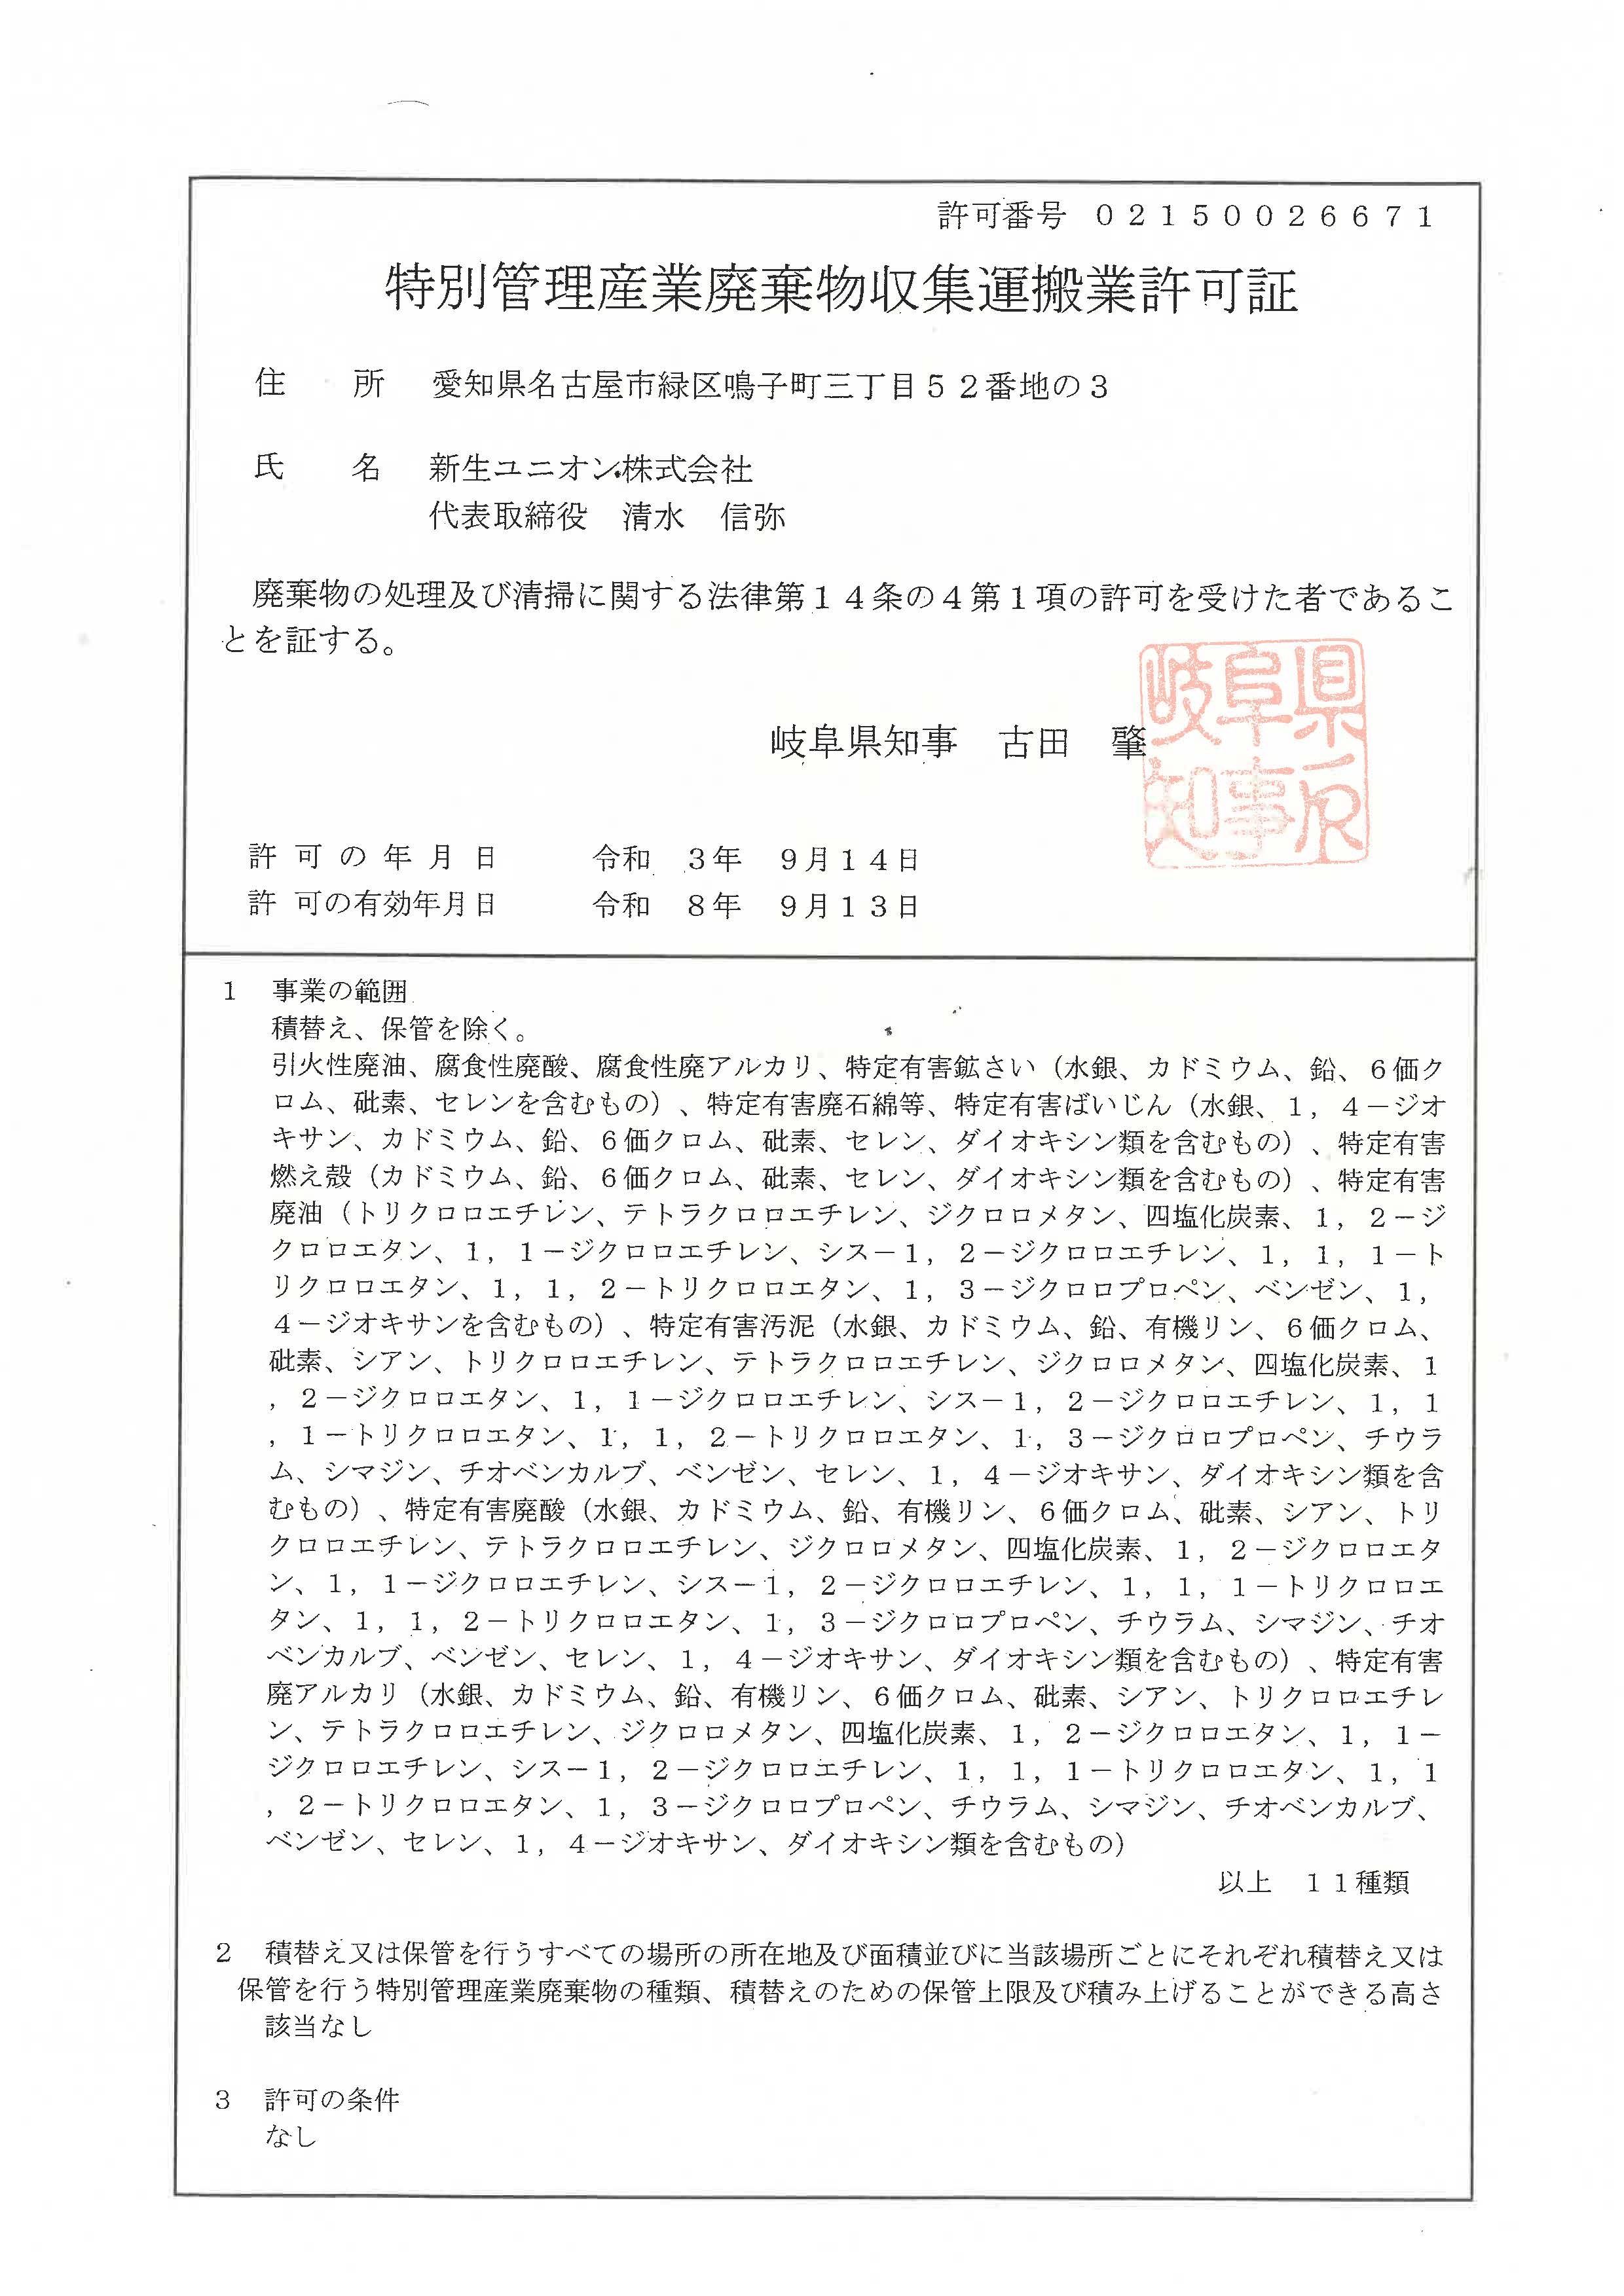 岐阜県特別産業廃棄物収集運搬業許可証